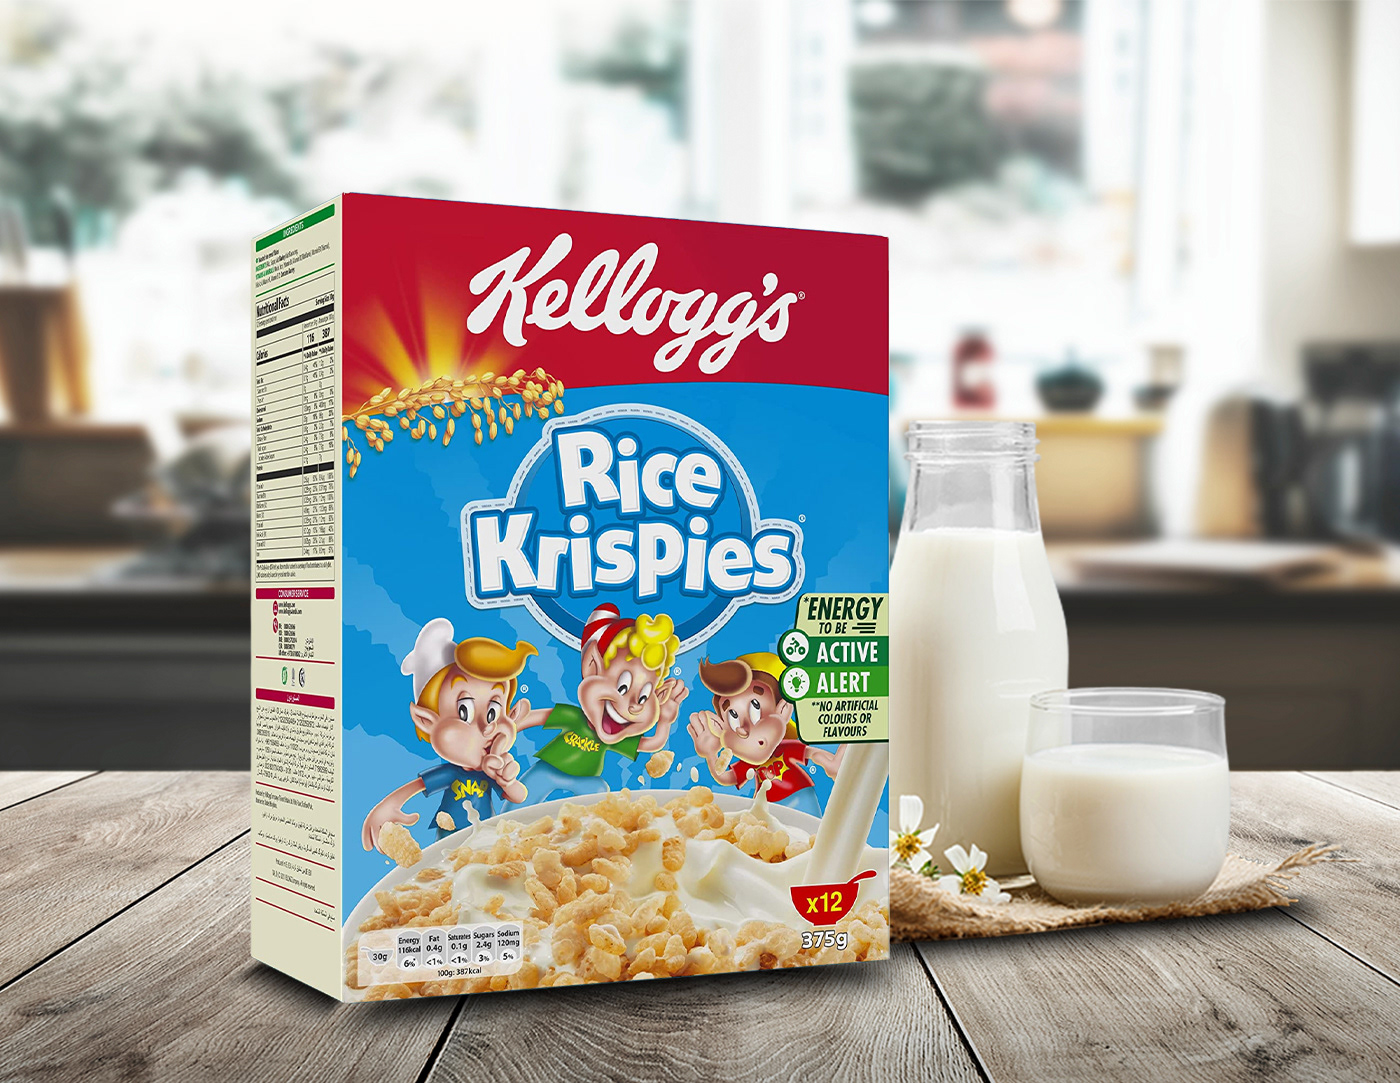 Adobe Portfolio breakfast Cereal designer Food  Illustrator marketing   MORNING Photography  Social media post